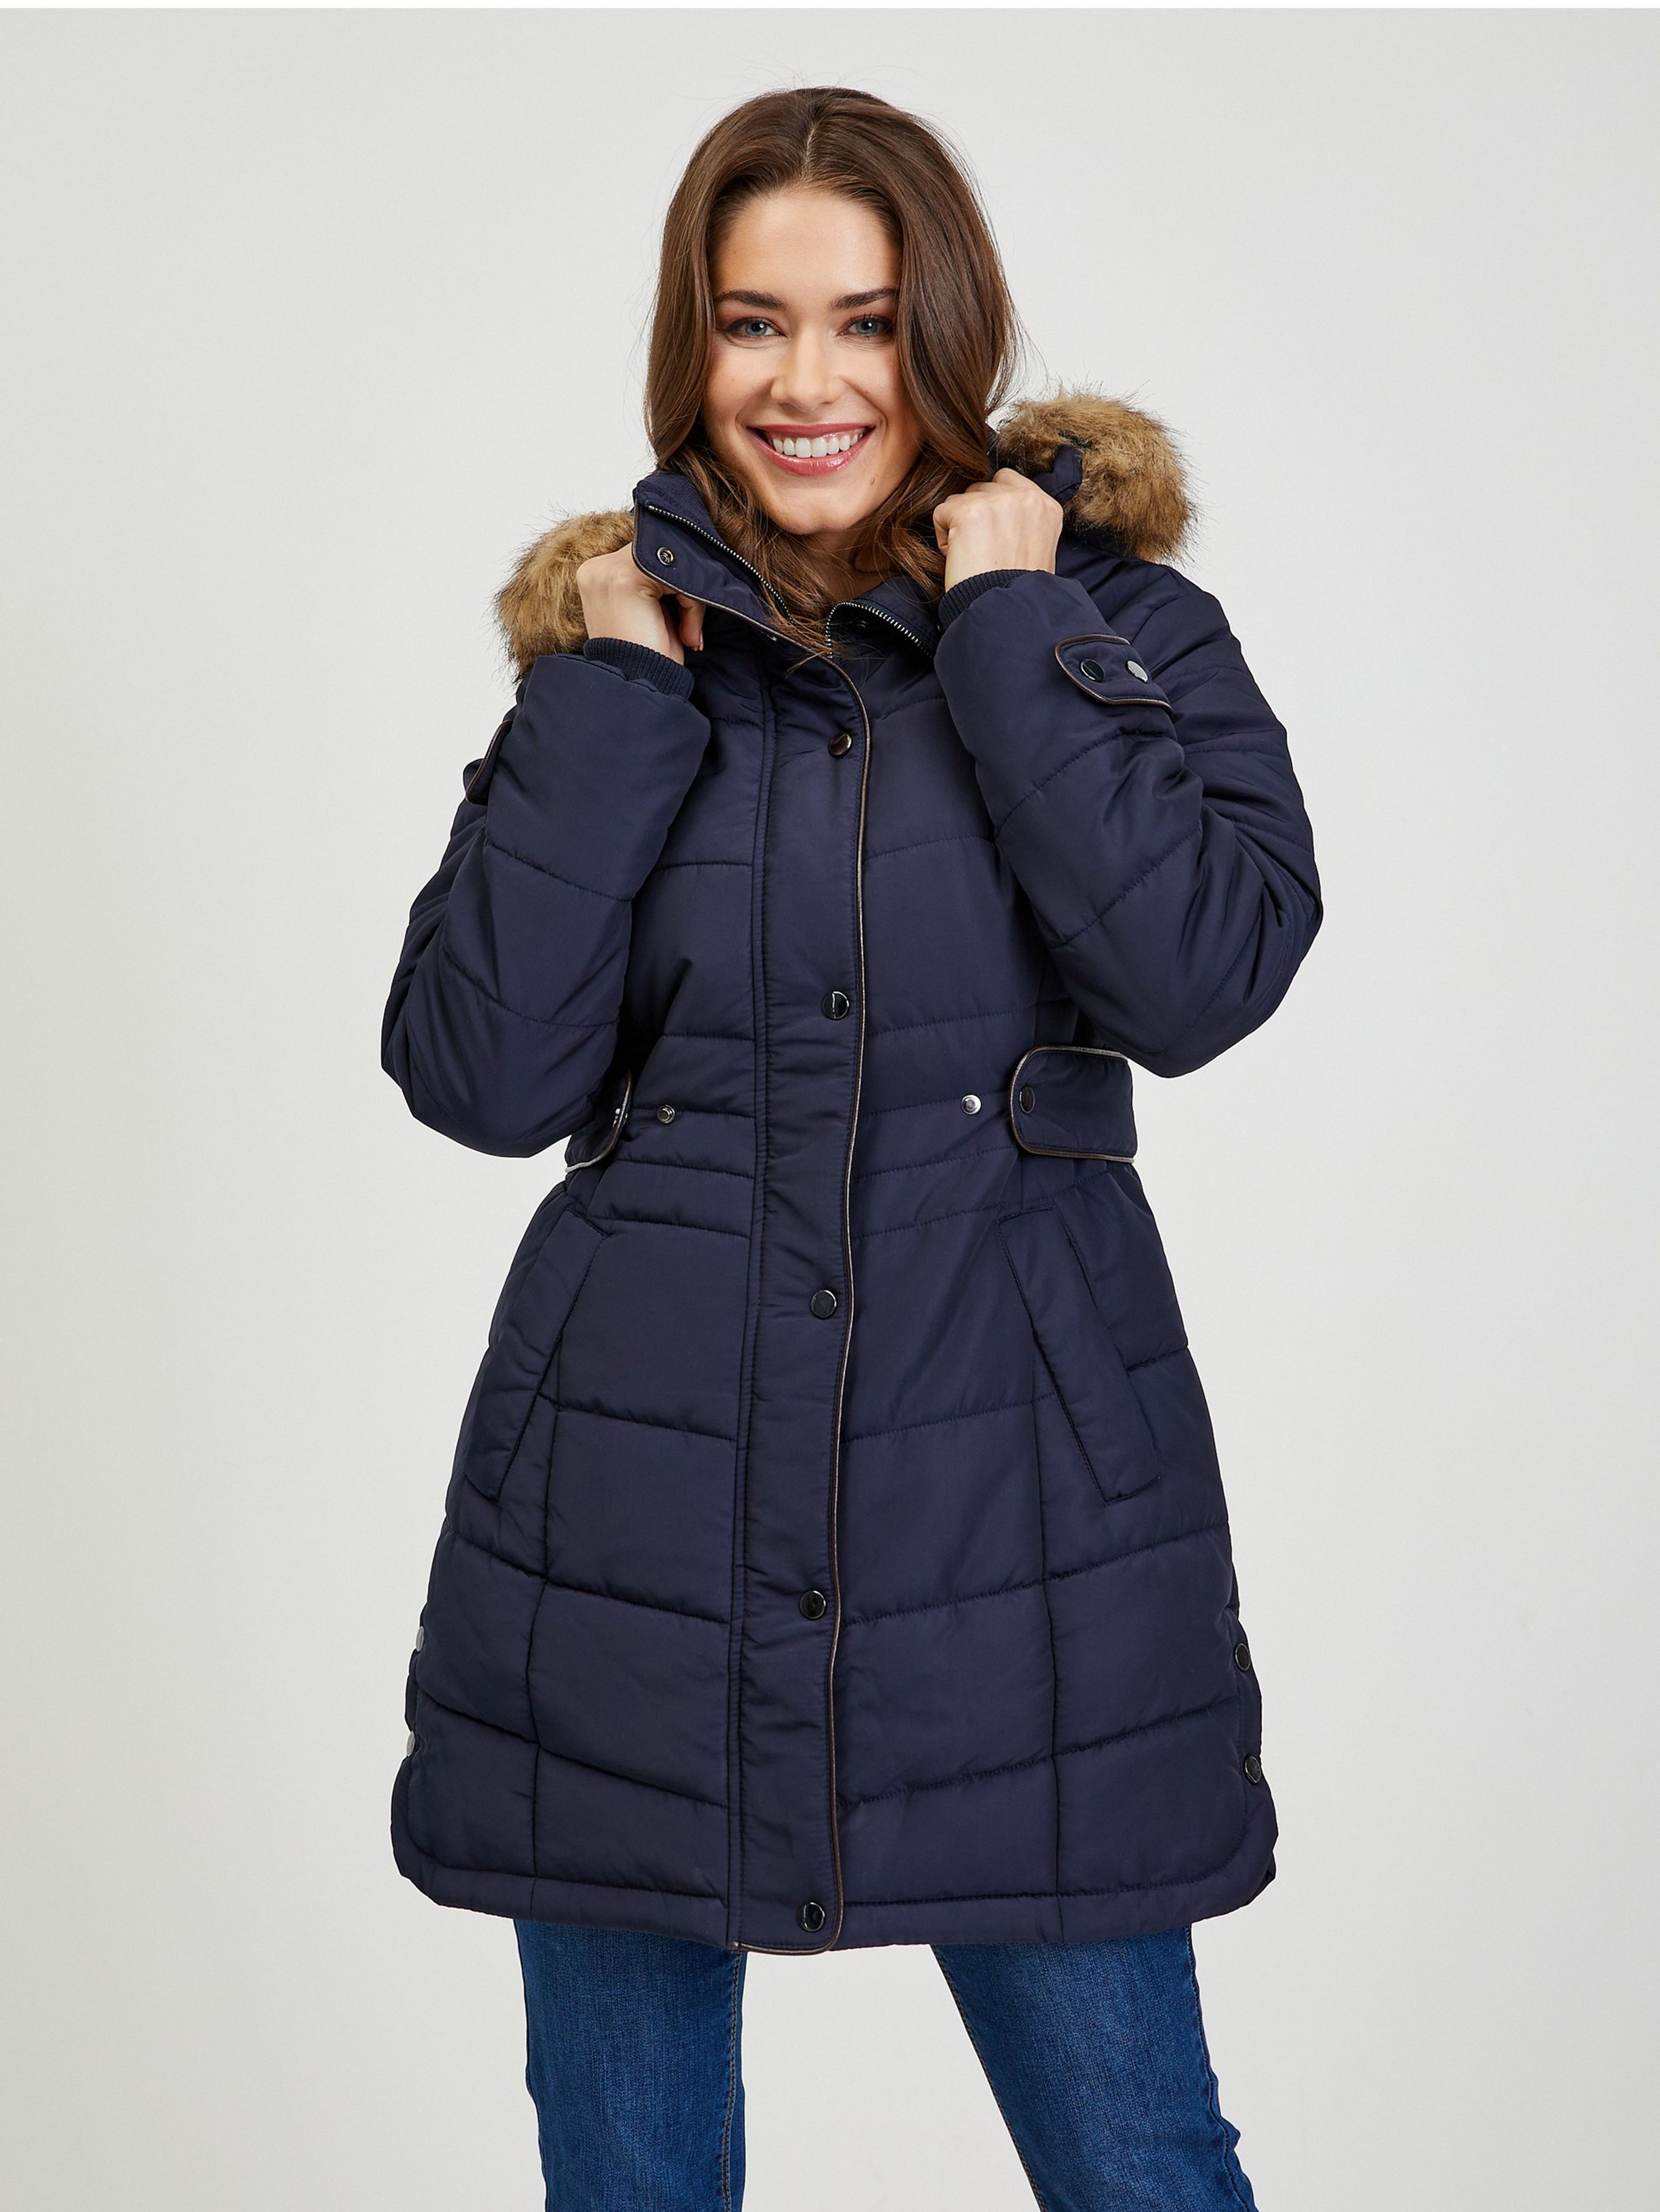 Tmavě modrý dámský prošívaný zimní kabát s odepínací kapucí s kožíškem ORSAY